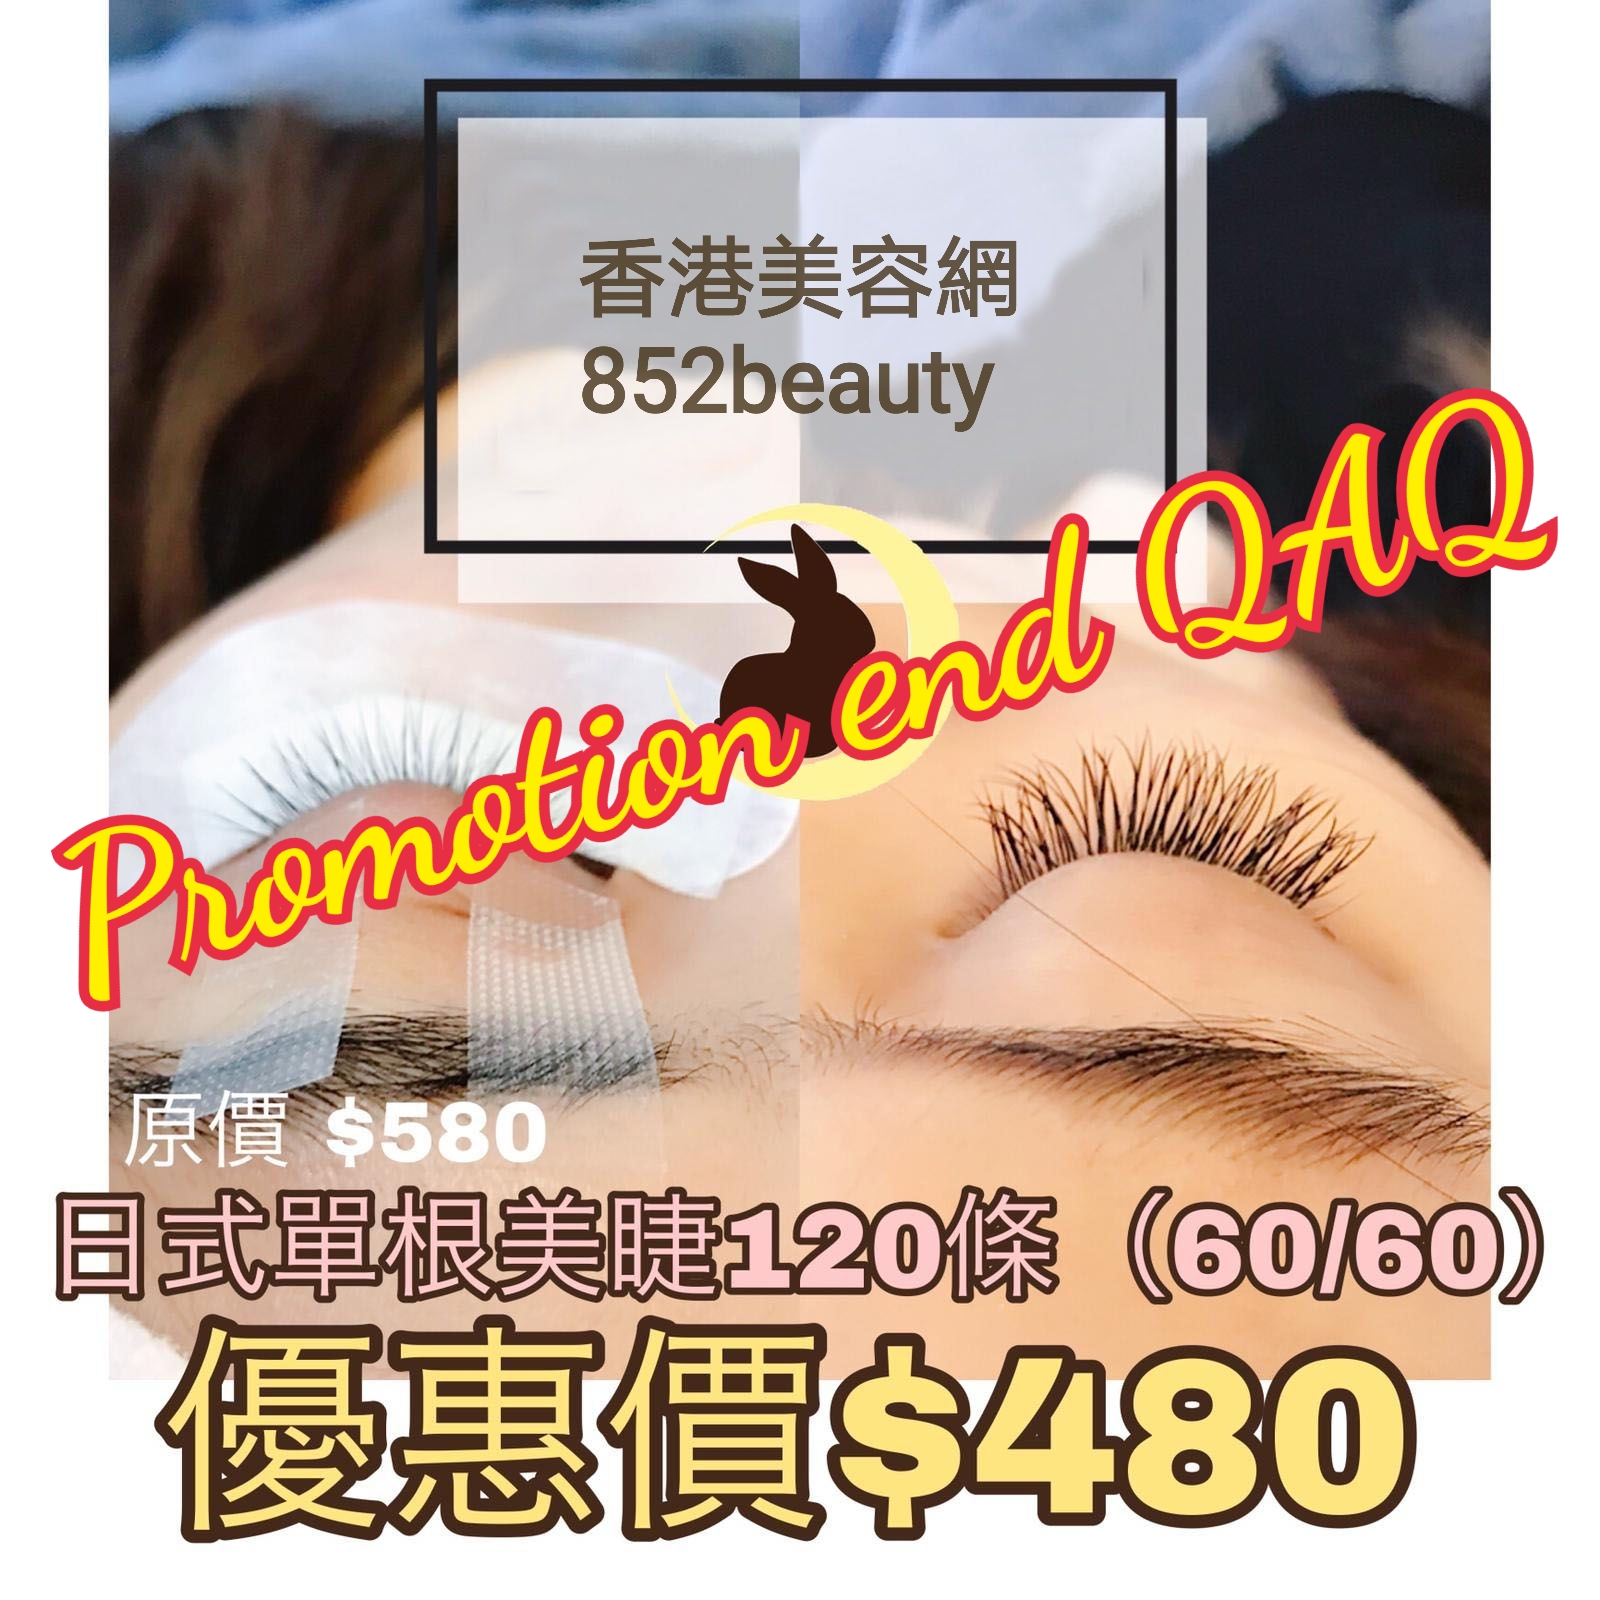 香港美容网 Hong Kong Beauty Salon 最新美容优惠: 美睫優惠 - 銅鑼灣區] 日式單根植睫毛 超優惠 $480 (已結束)